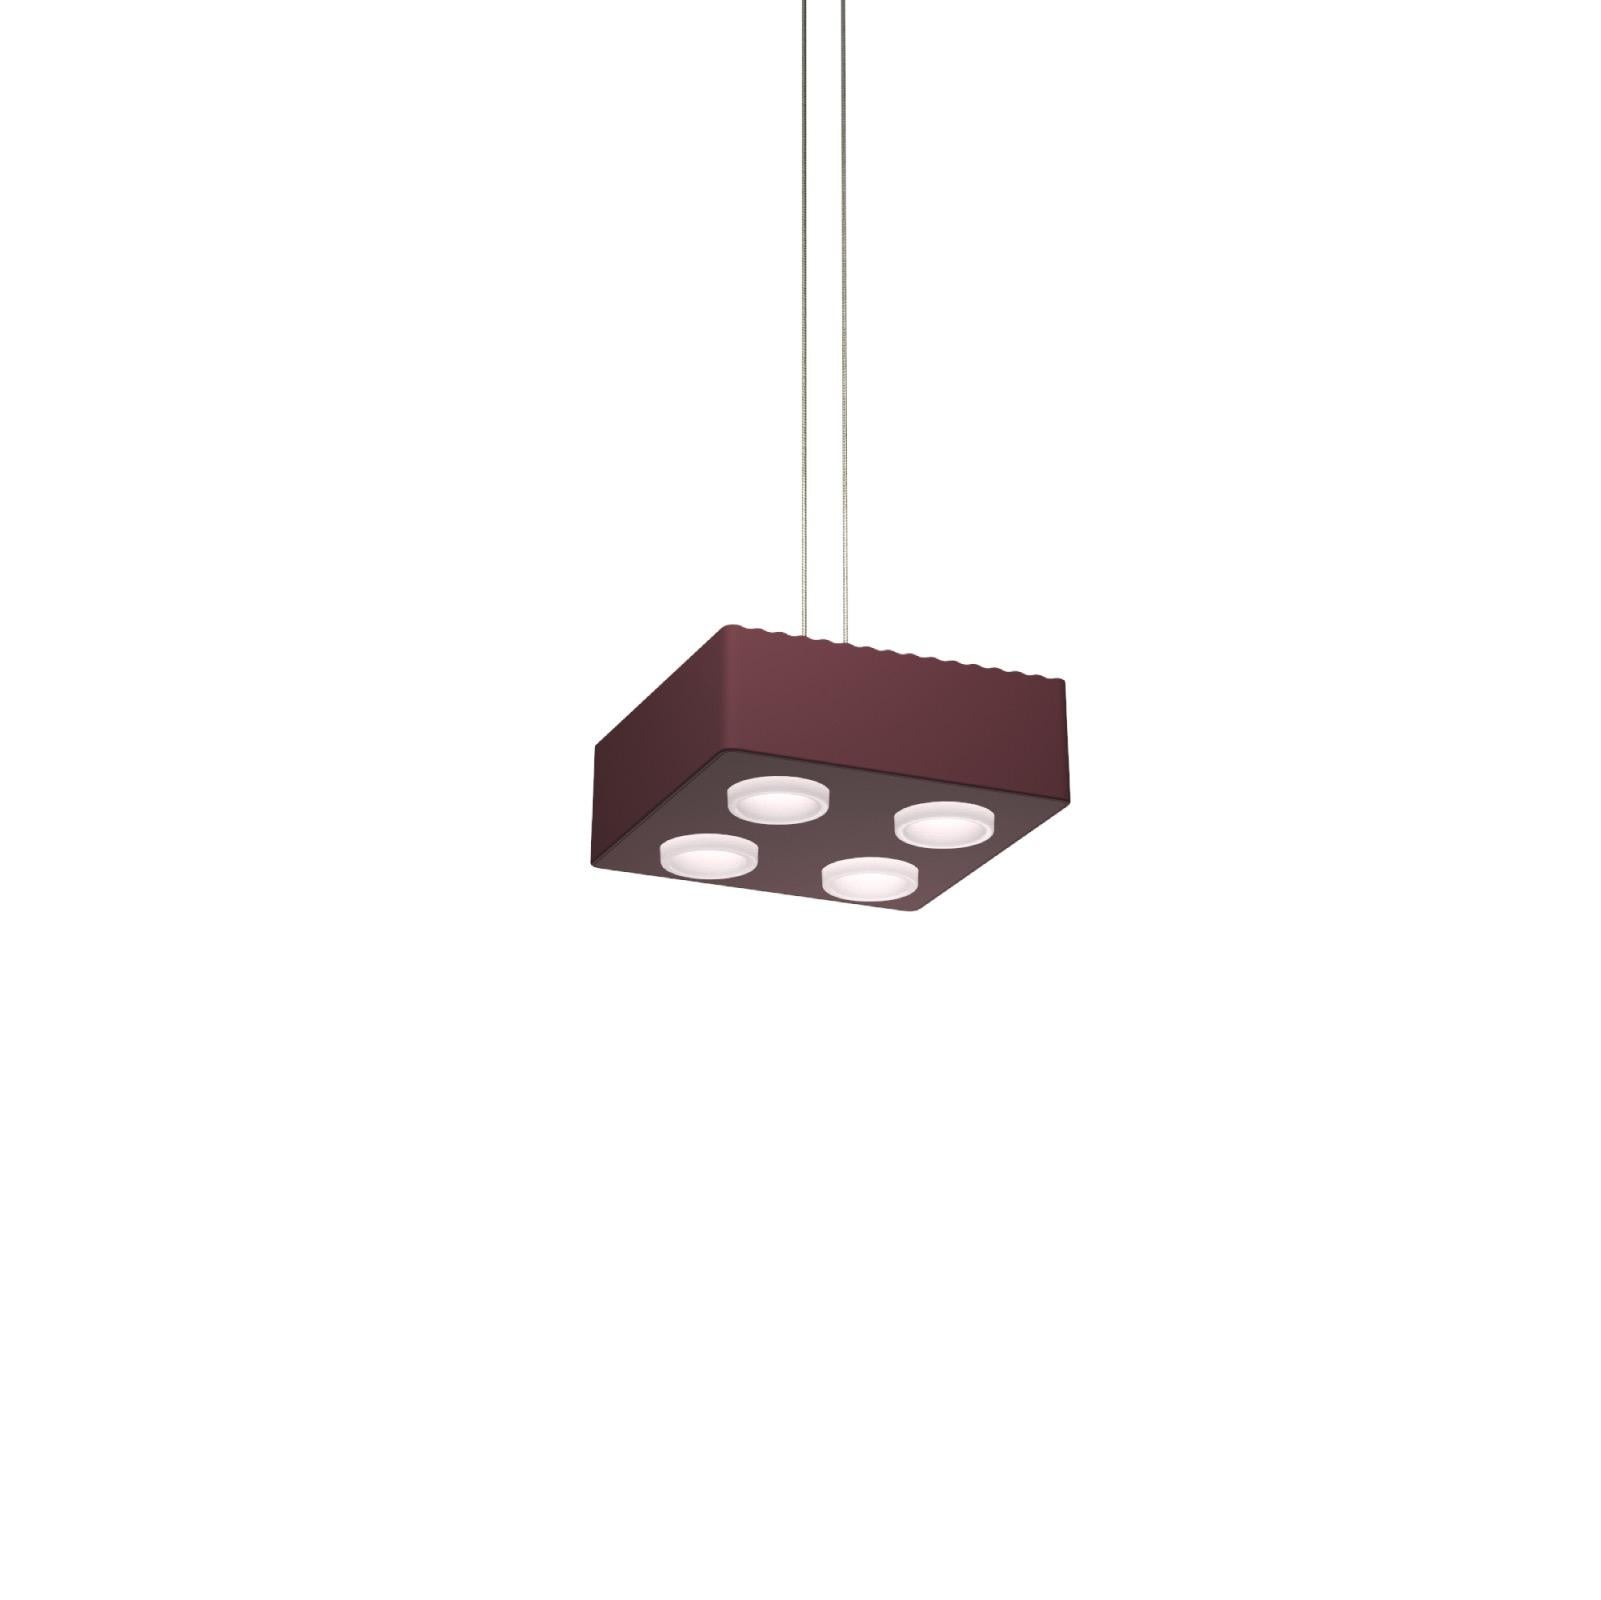 Lampe pendante Domino de Sylvain Willenz x AGO Lighting
Burgundy - Lampe suspendue simple

Matériaux : Aluminium 
Source lumineuse : LED intégrée (COB), DC
Watt. 15 W
Temp. de couleur 2700 / 3000K
Longueur du câble : 3M 

Couleurs